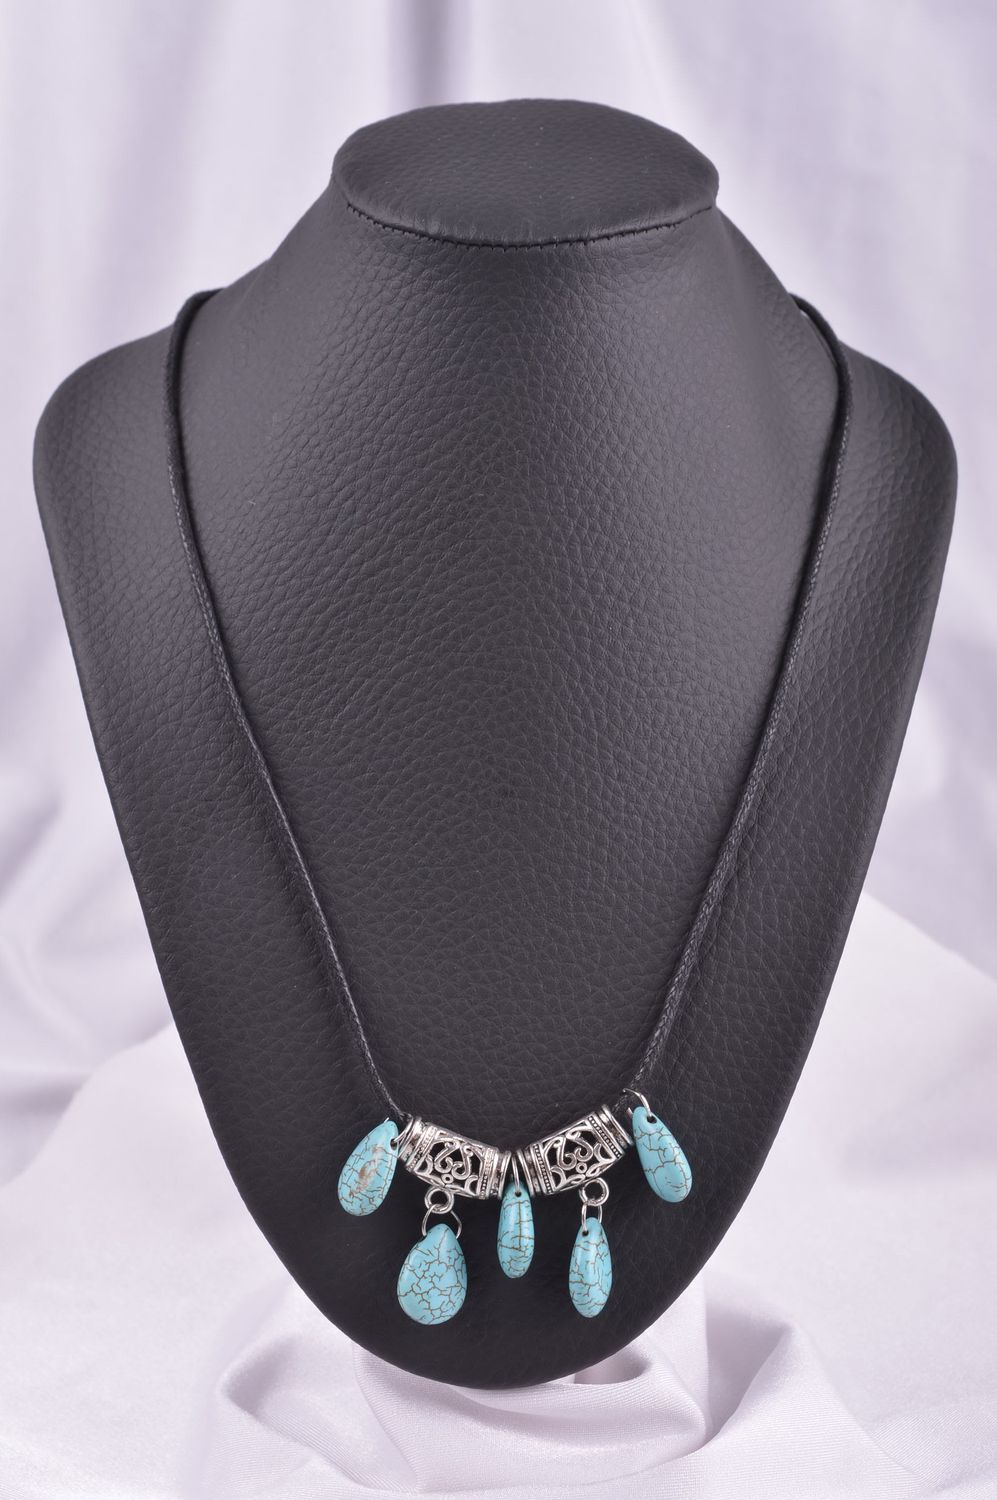 Handmade turquoise necklace elegant romantic necklace stylish accessory photo 1